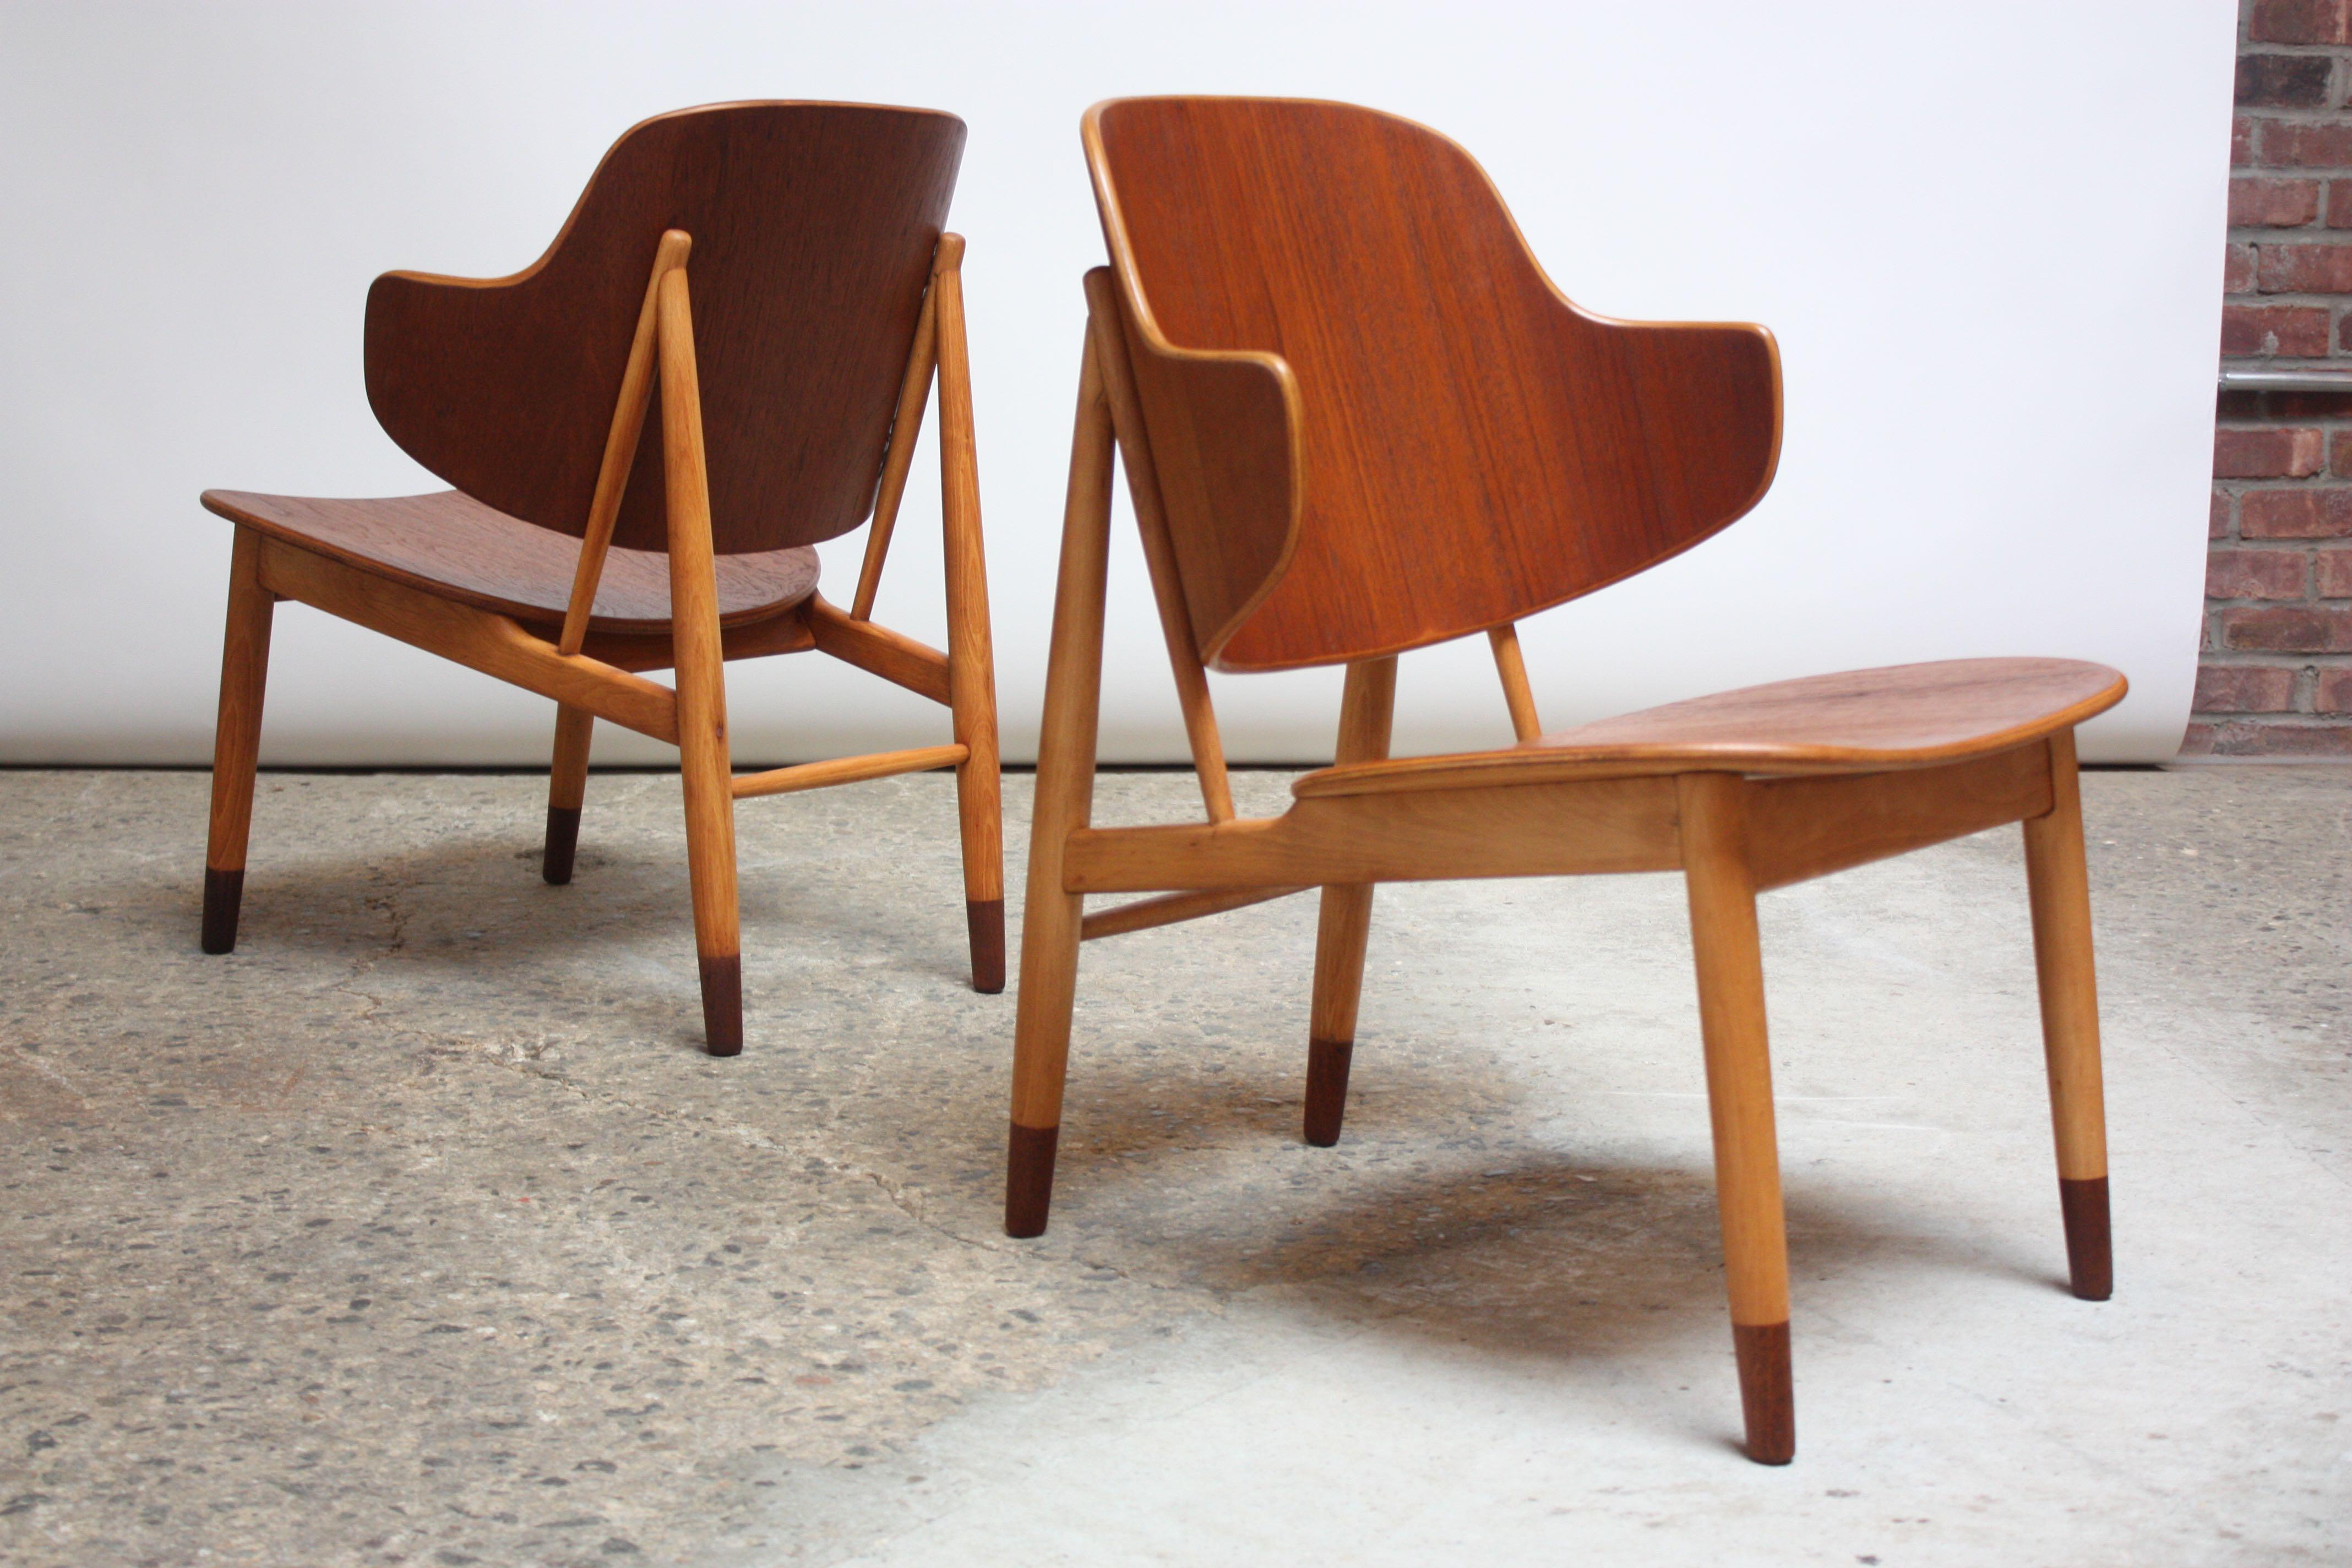 Ein Paar dänische Schalenstühle aus Buche und Teakholz aus den 1950er Jahren, entworfen von Ib Kofod-Larsen für Christensen & Larsen. Die Rückenlehne und die Sitzfläche aus gebogenem Teakholz sind auf einem Buchengestell montiert und bilden einen